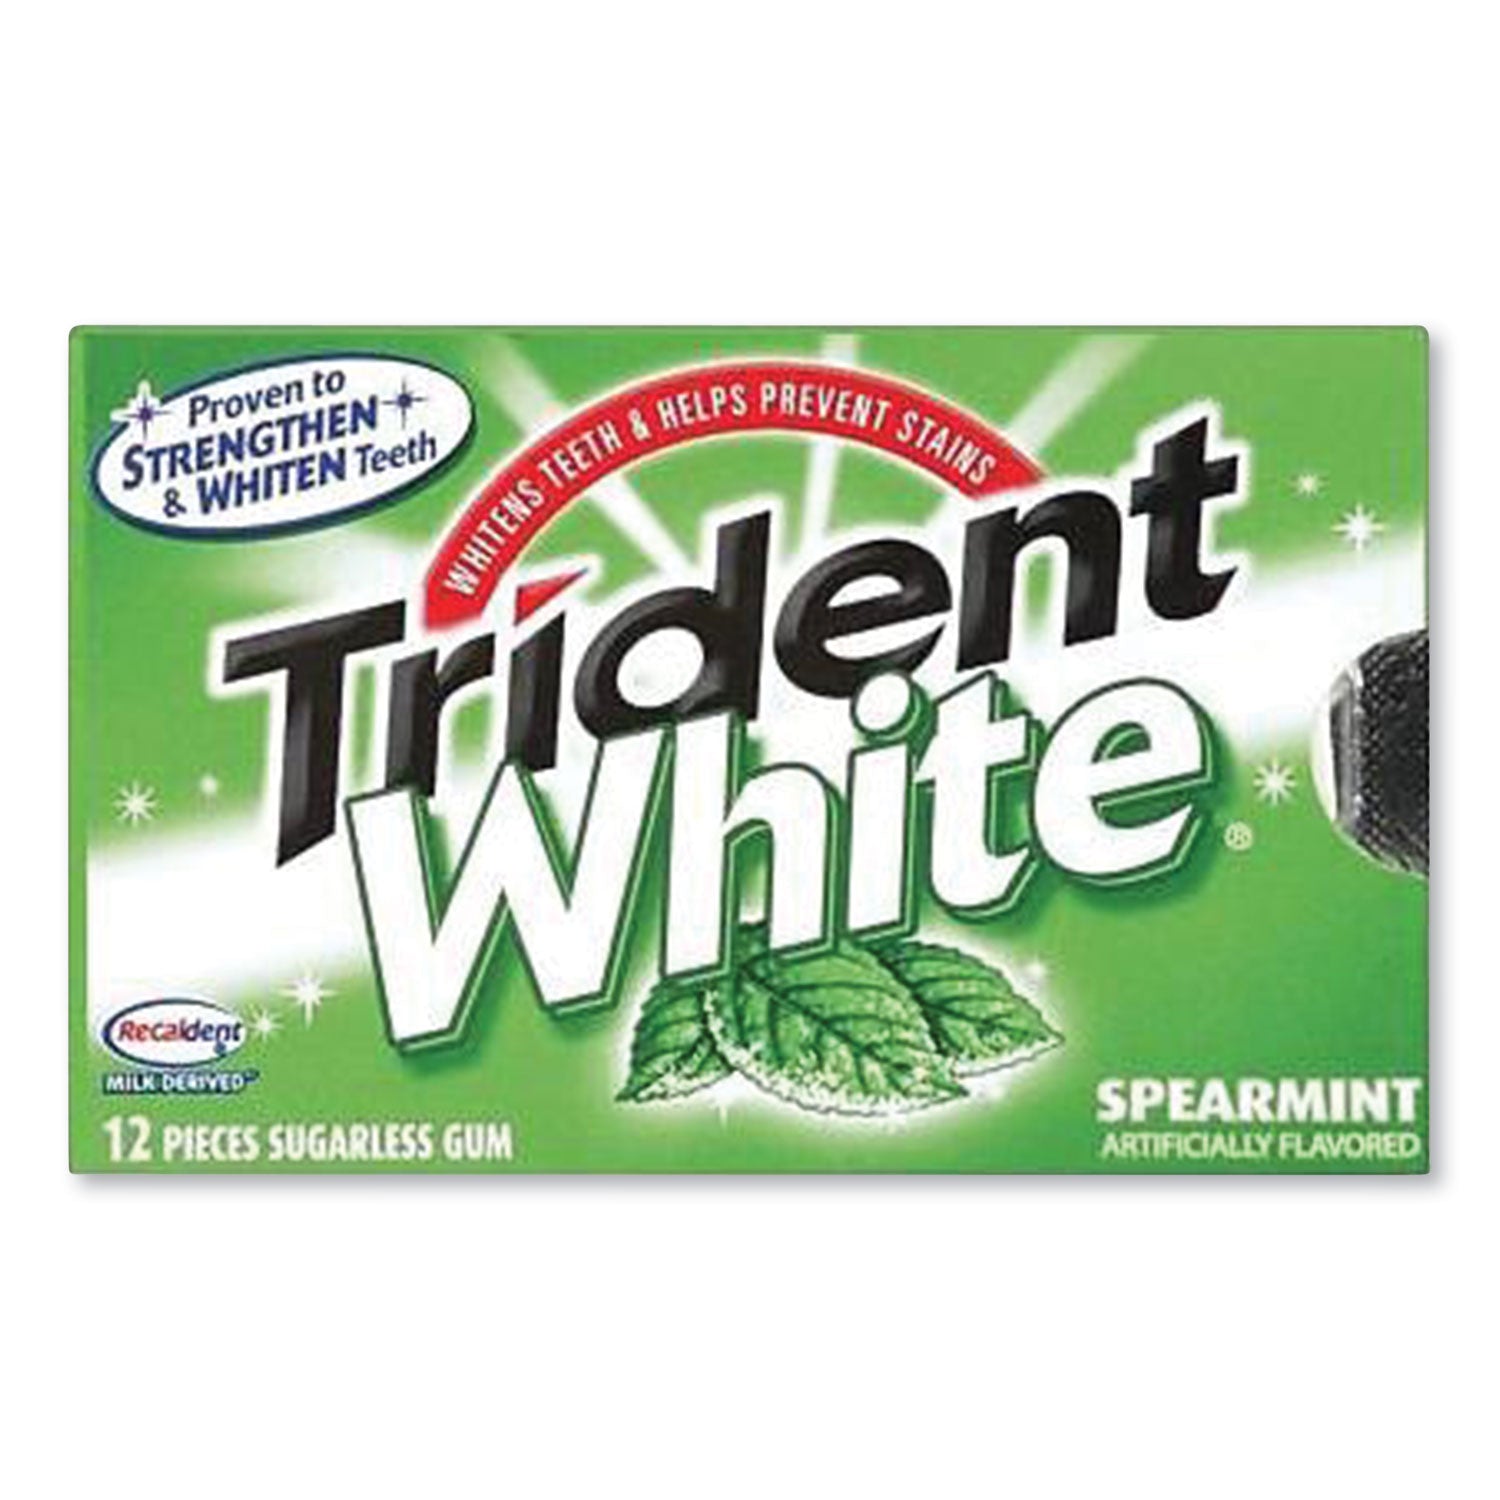 sugar-free-gum-white-spearmint-16-sticks-pack-9-packs-box_cdbamc67610 - 1